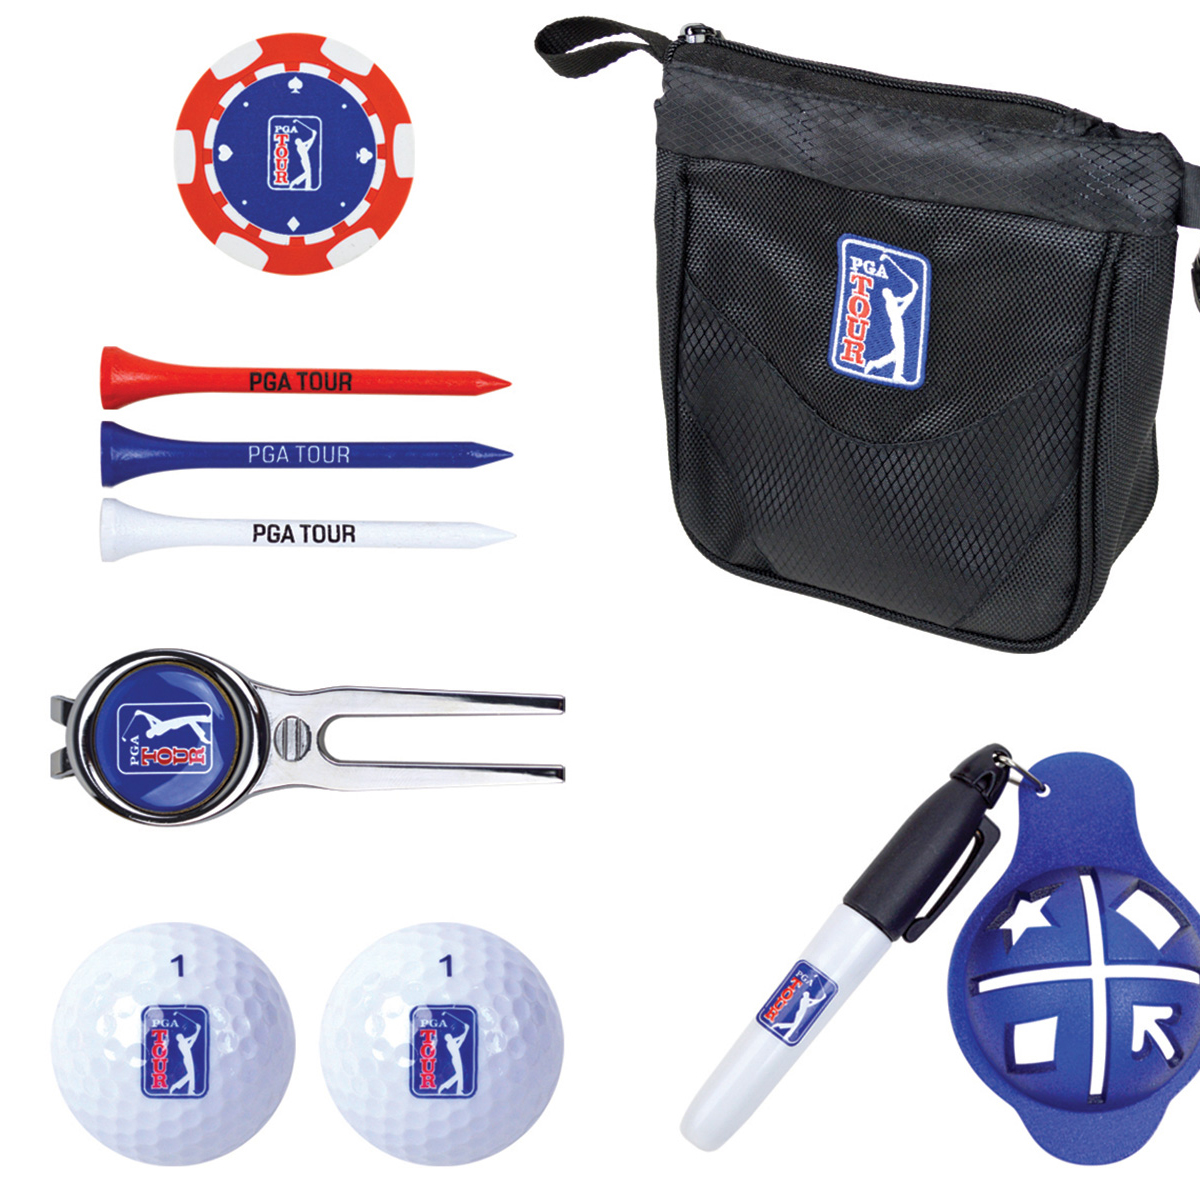 pga tour golf accessories